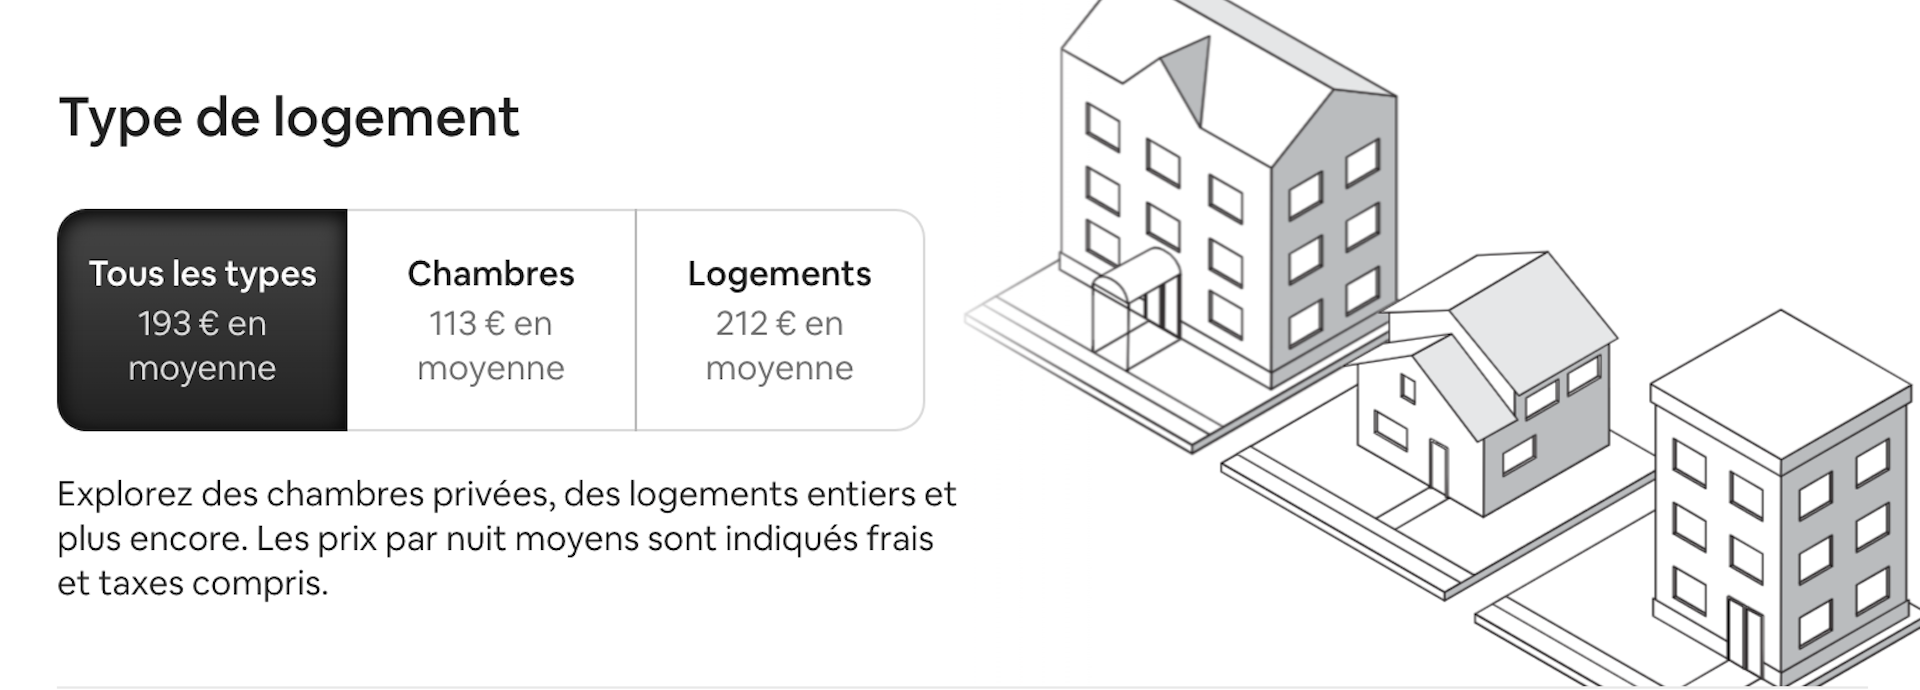 Prix/nuit moyen pour un logement Airbnb en Belgique, toutes saisons confondues.